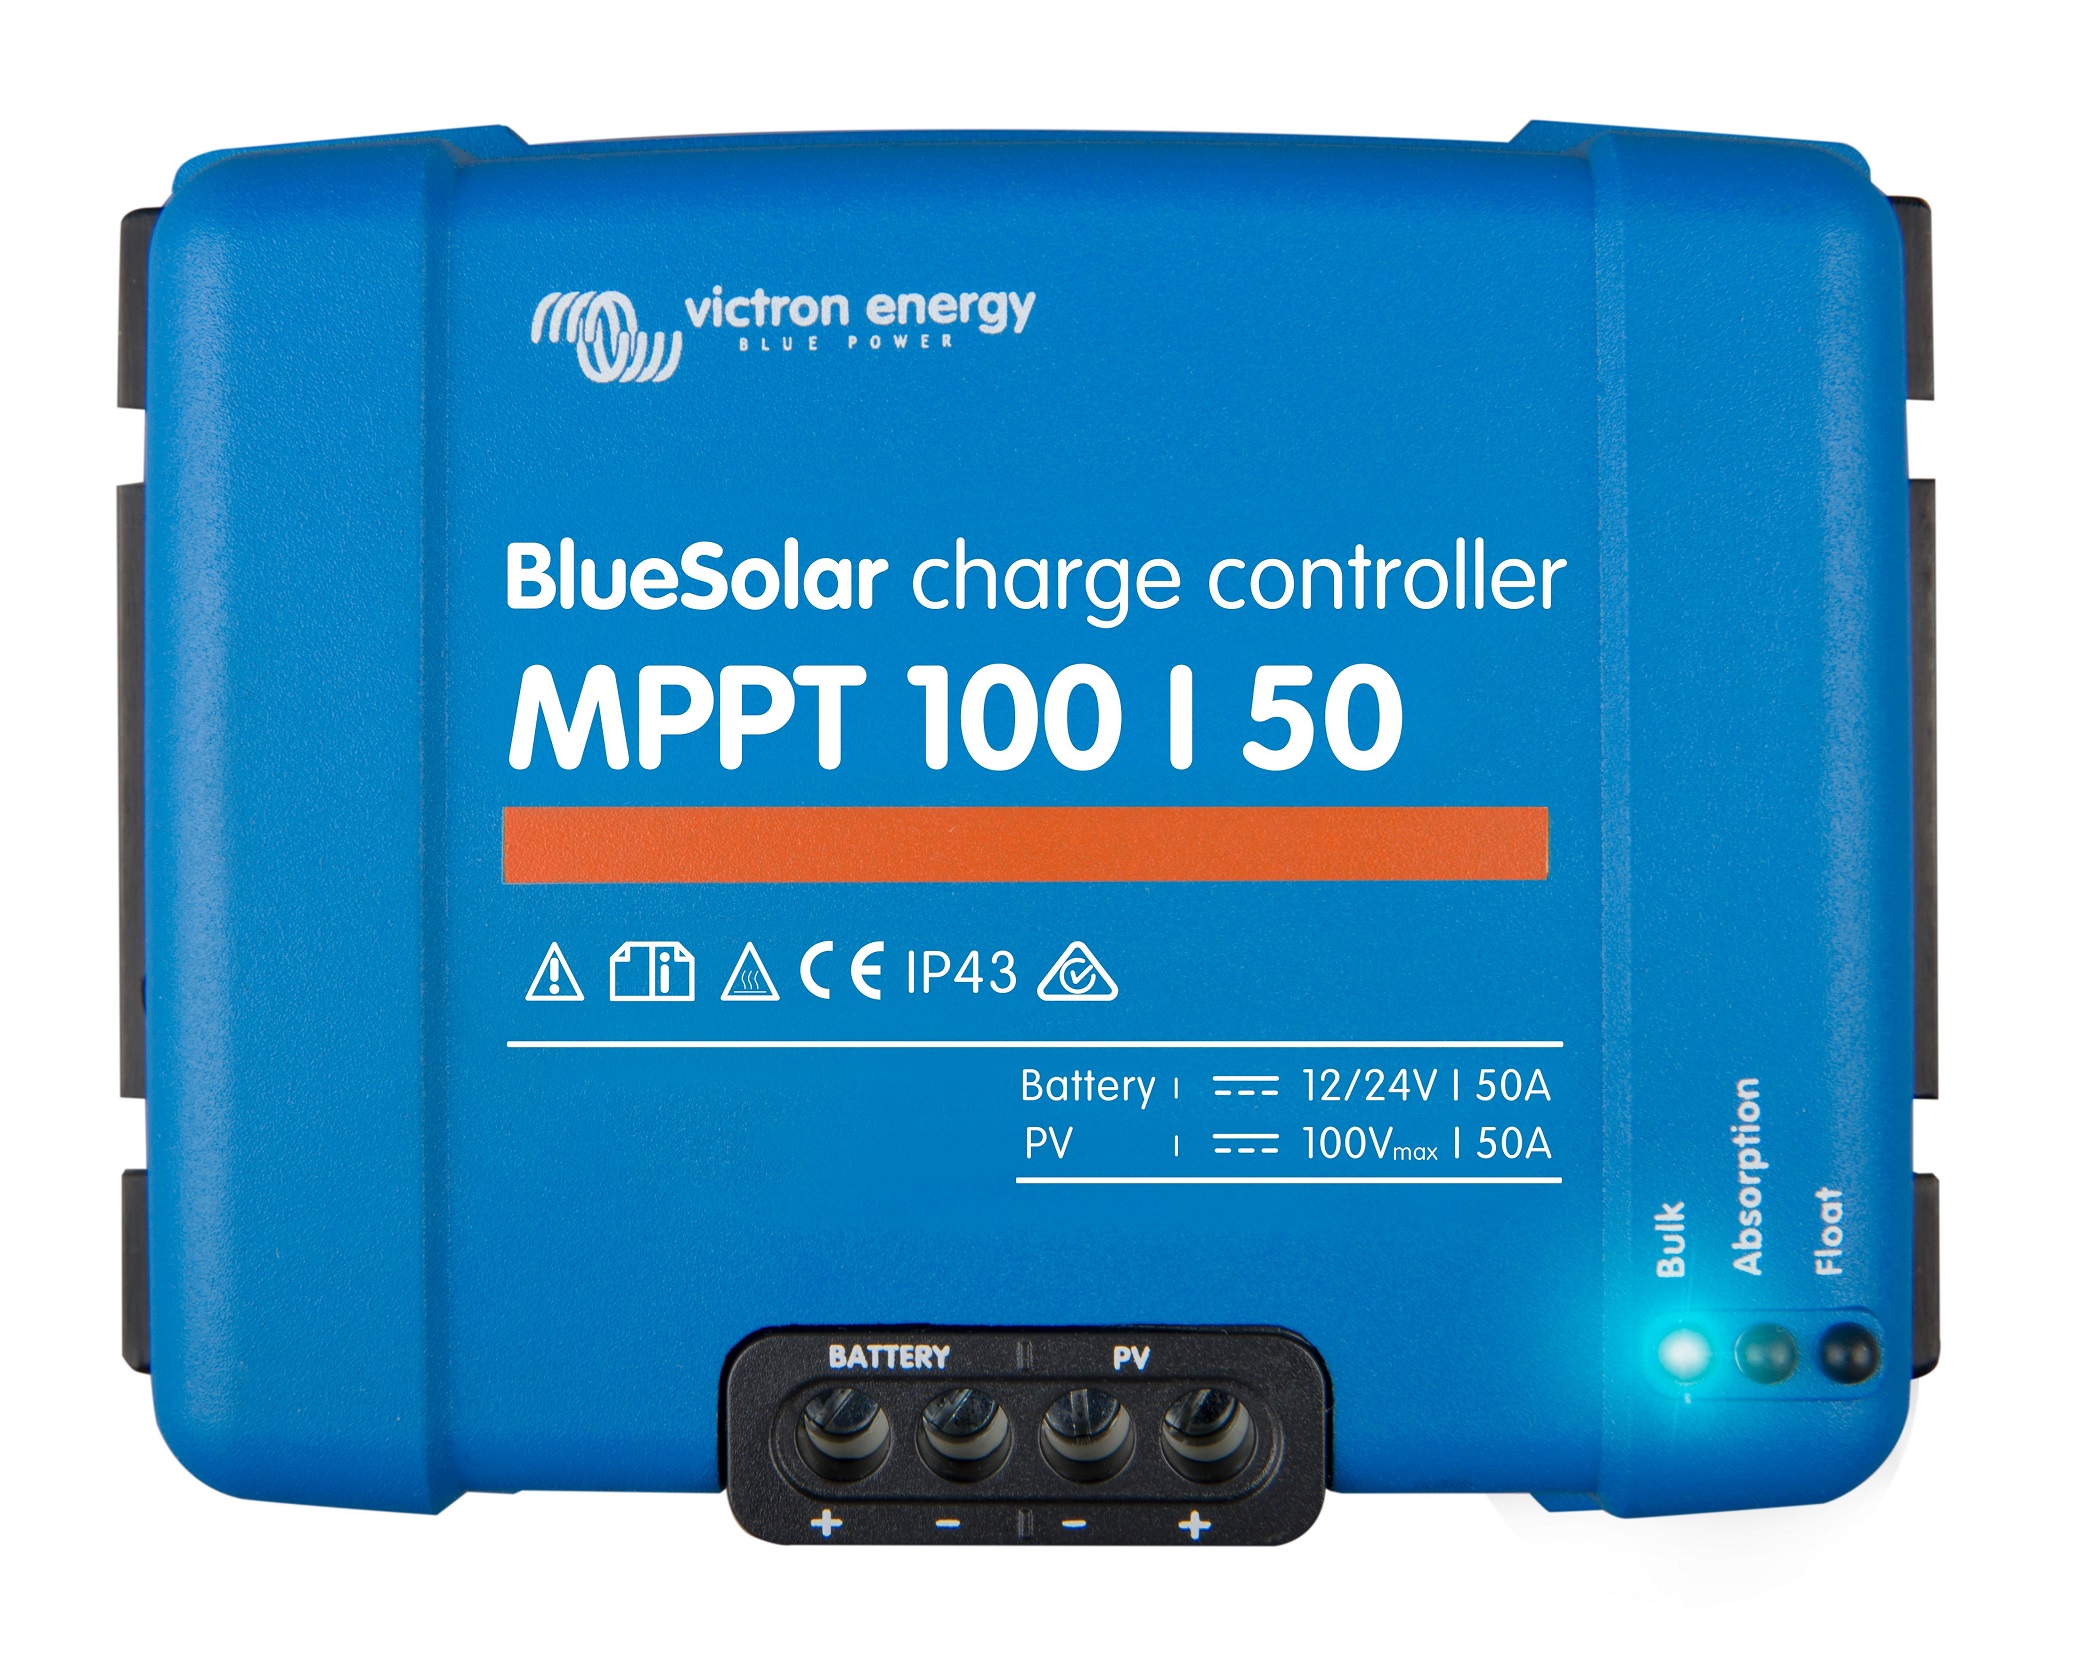 Regulatoare de incarcare - Regulator de incarcare Victron Energy BlueSolar MPPT 100/50, climasoft.ro